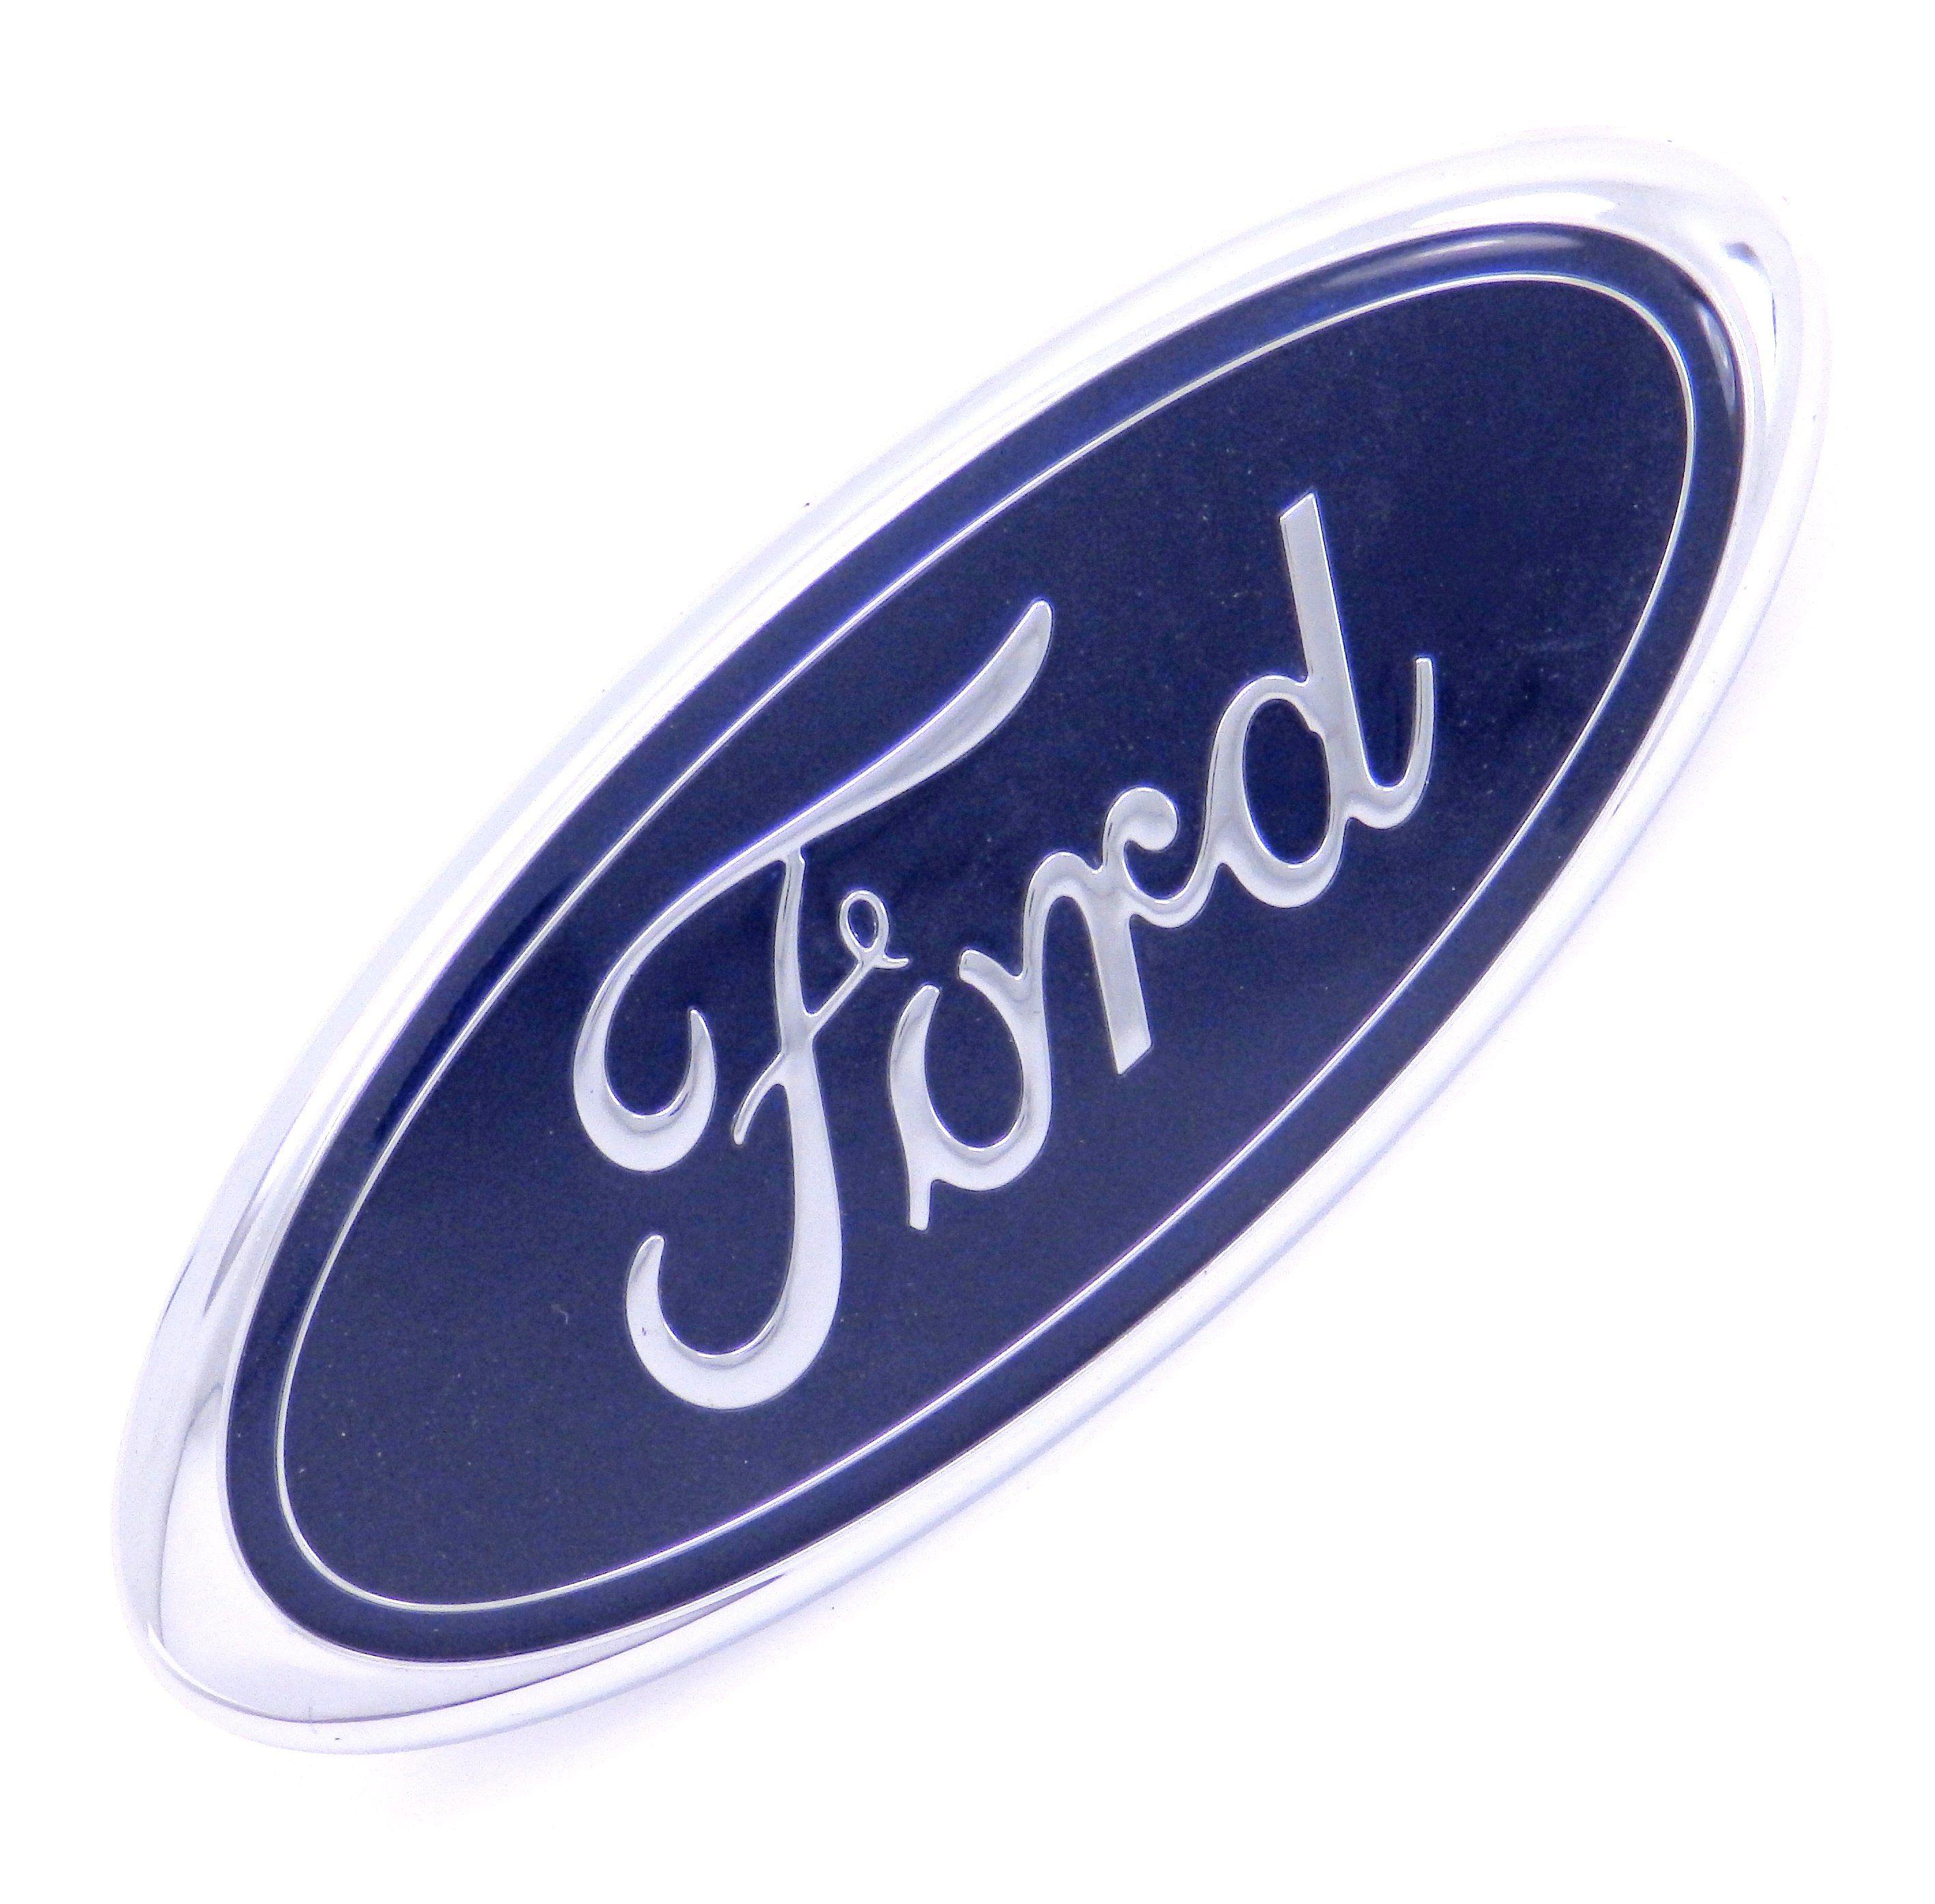 Ford Explorer Logo - FORD EXPLORER SPORT TRAC FRONT GRILLE EMBLEM LOGO 01 05